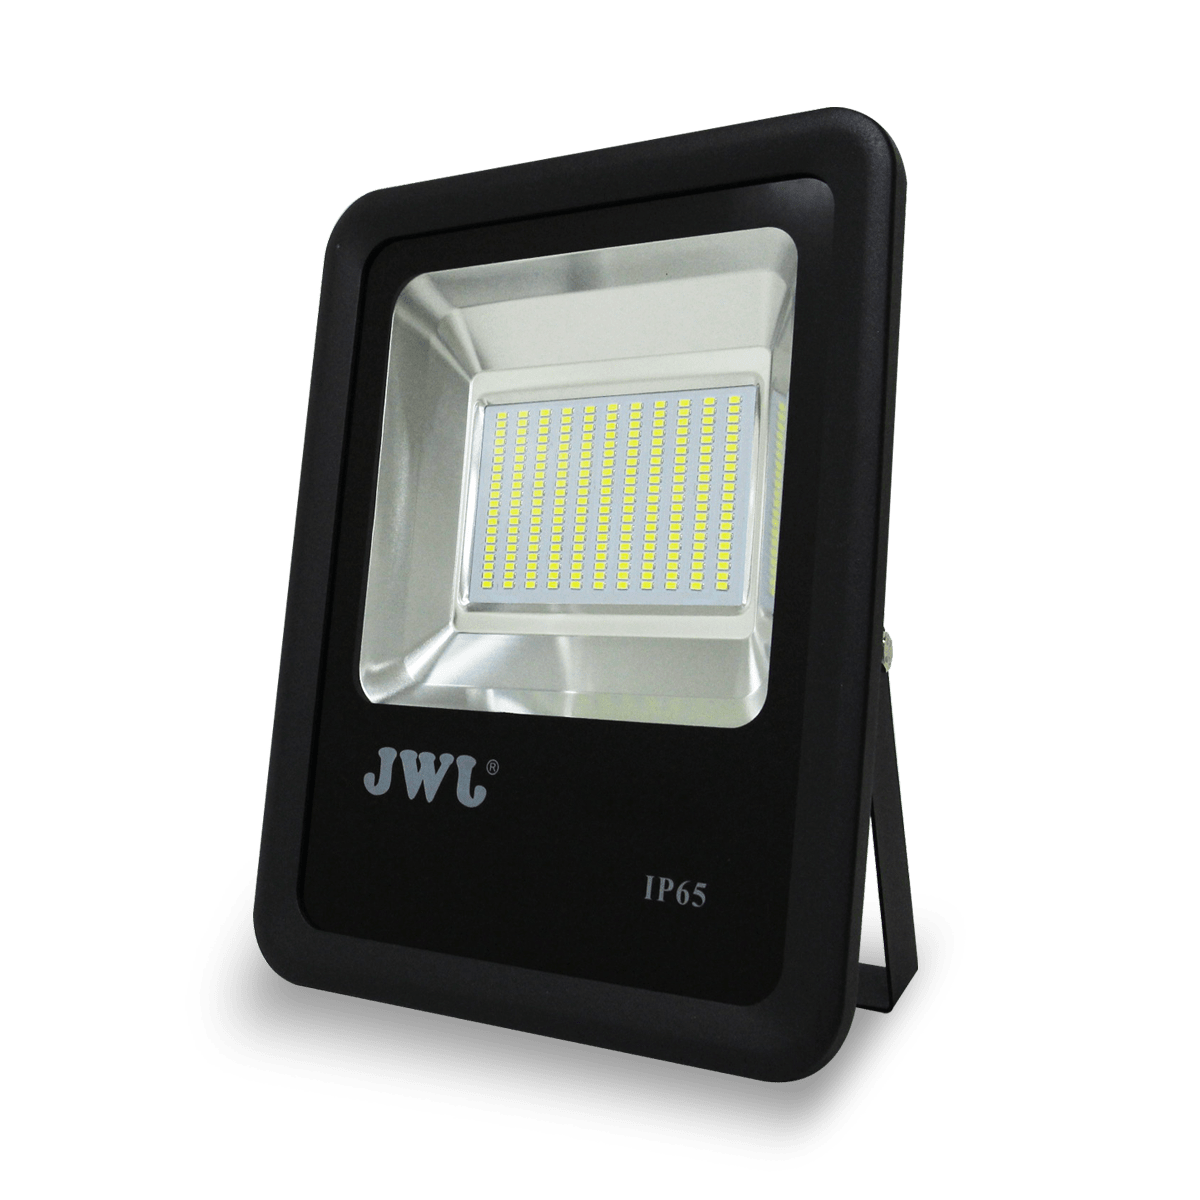 2X 80W SMD Foco LED con Sensor Movimiento,Proyector LED Exterior,Blanco  Calido con Detector PIR de IP65(resistente al agua),Iluminación de Exterior  y